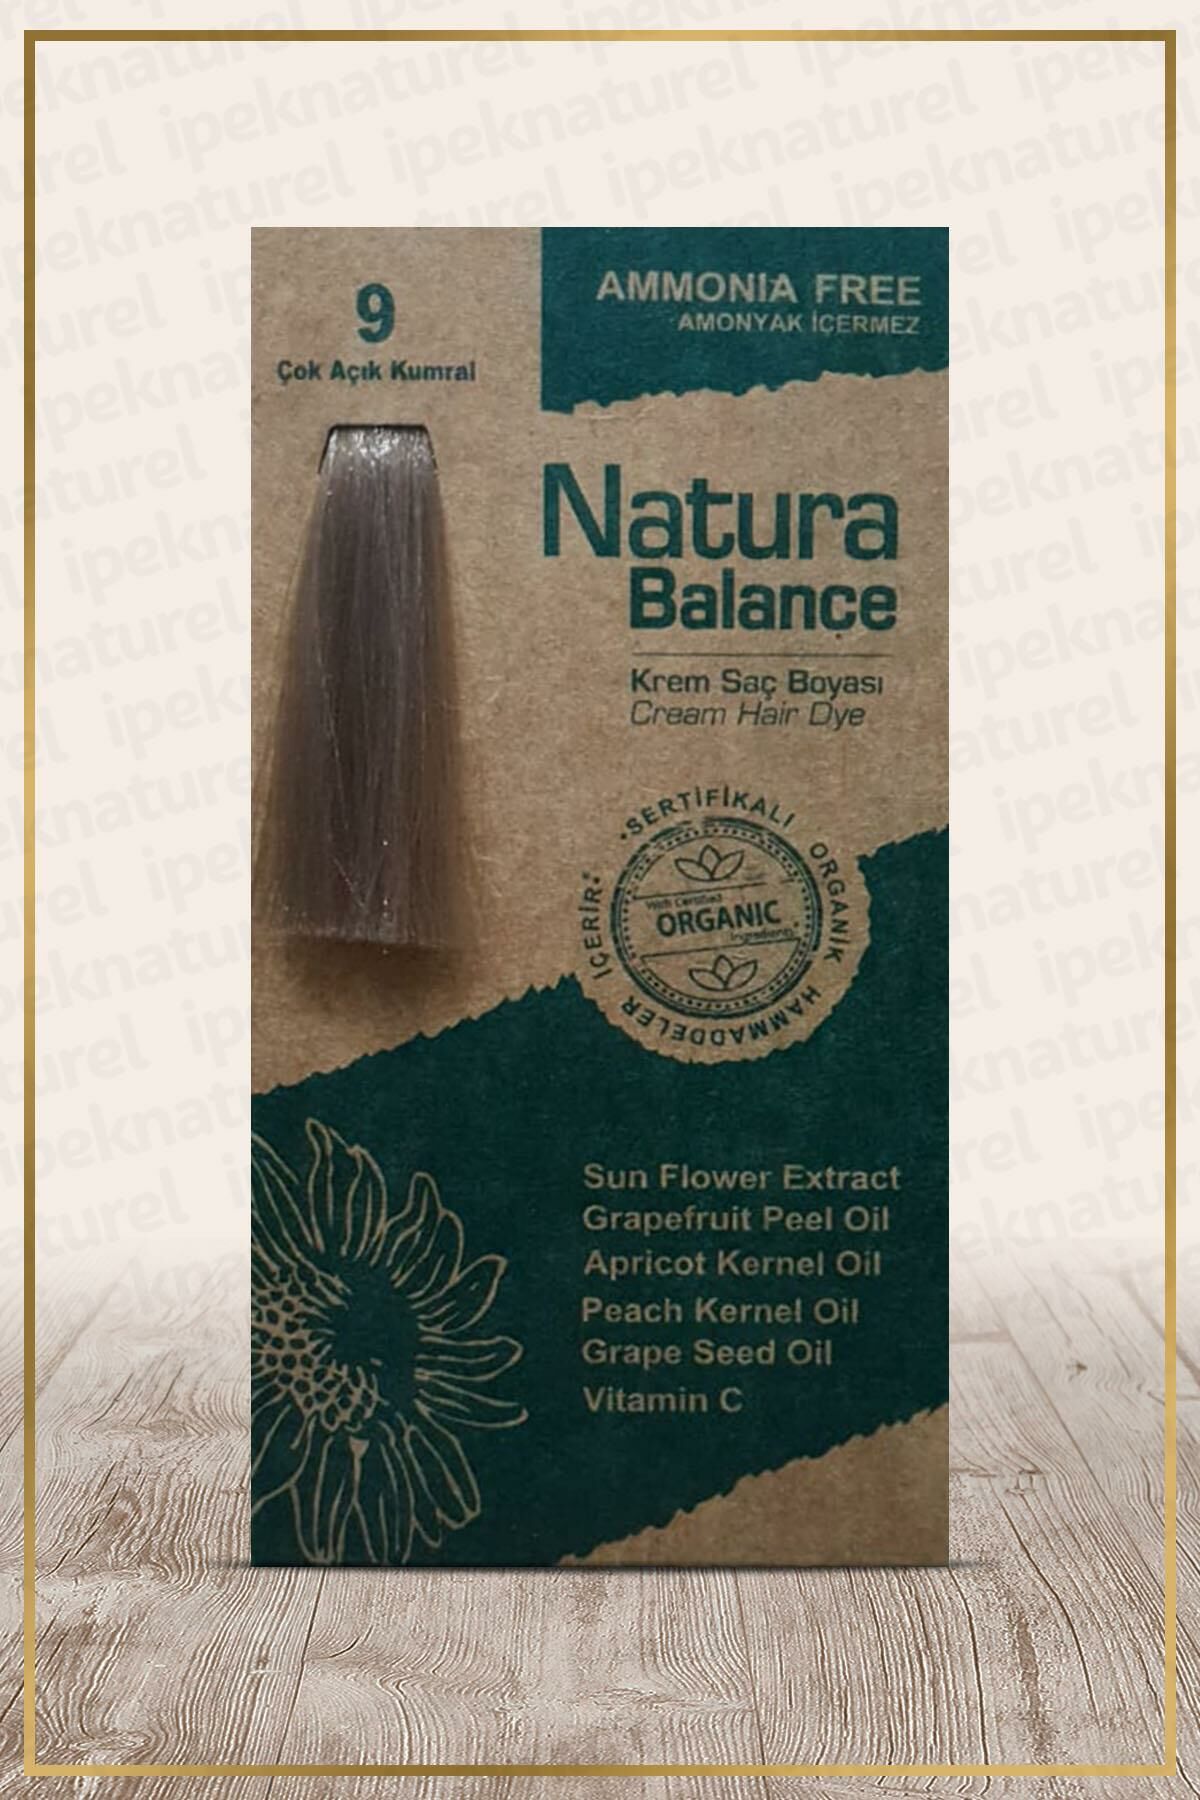 Natura Balance (Krem Saç Boyası) Çok Açık Kumral 9